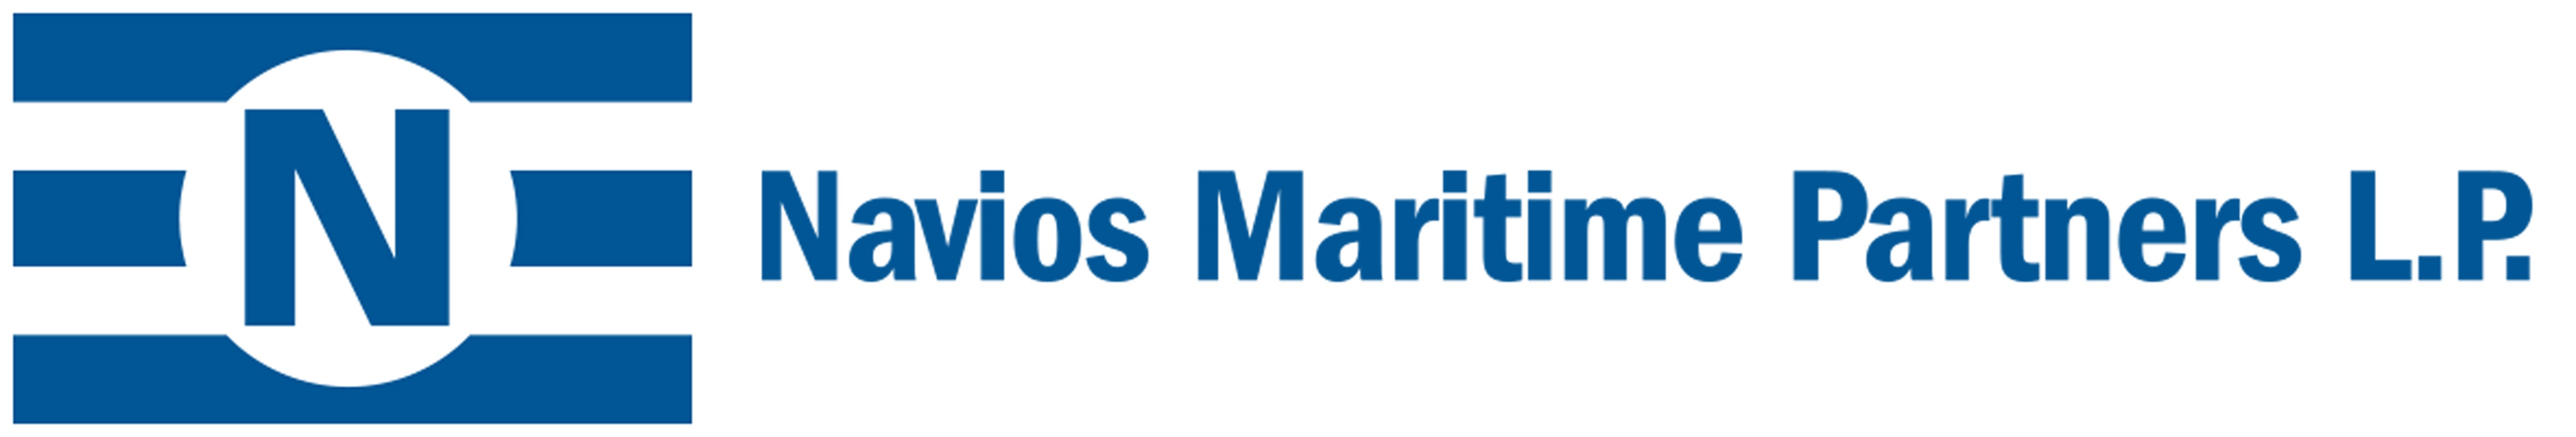 Navios Maritime Partners L.P. Announces Cash Distribution